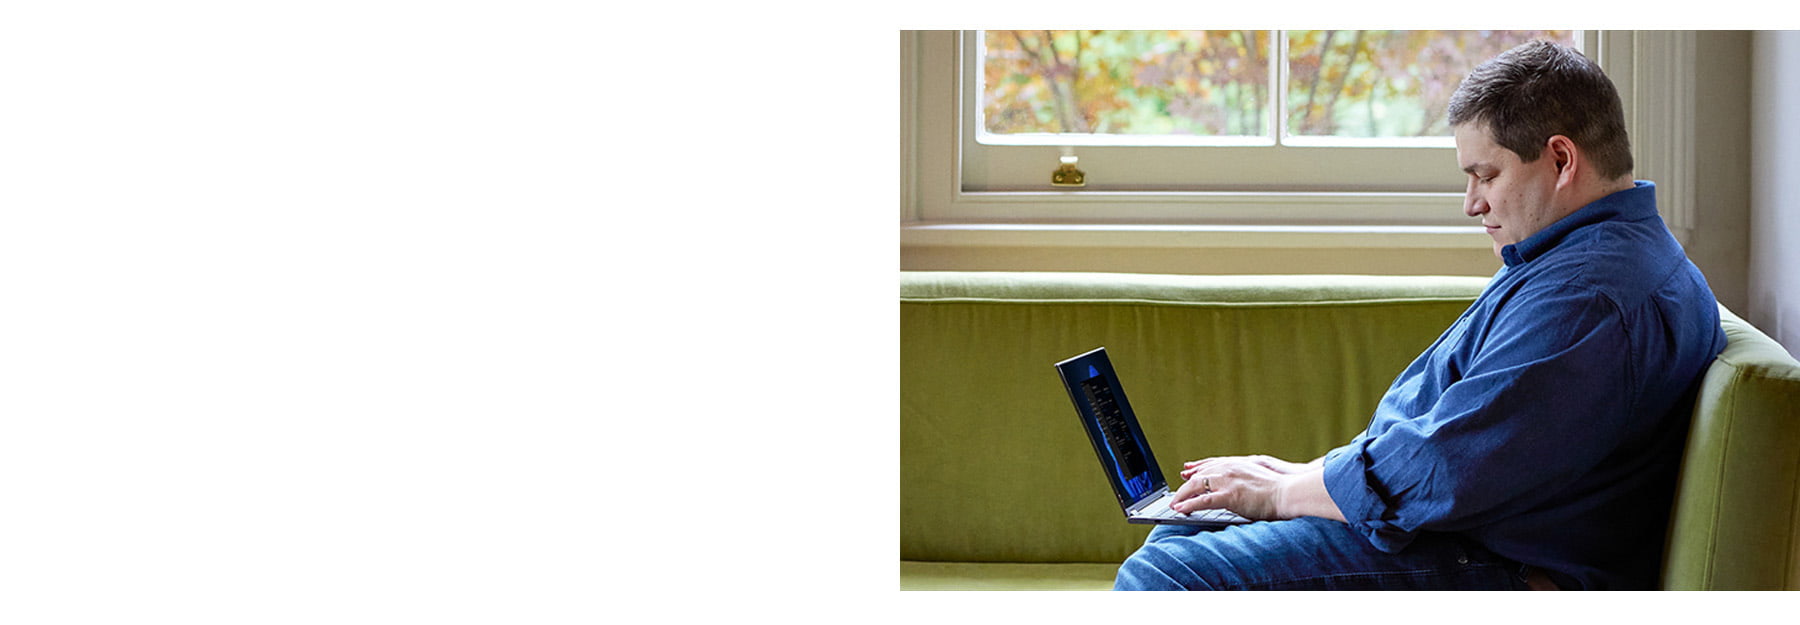 Microsoft man using laptop